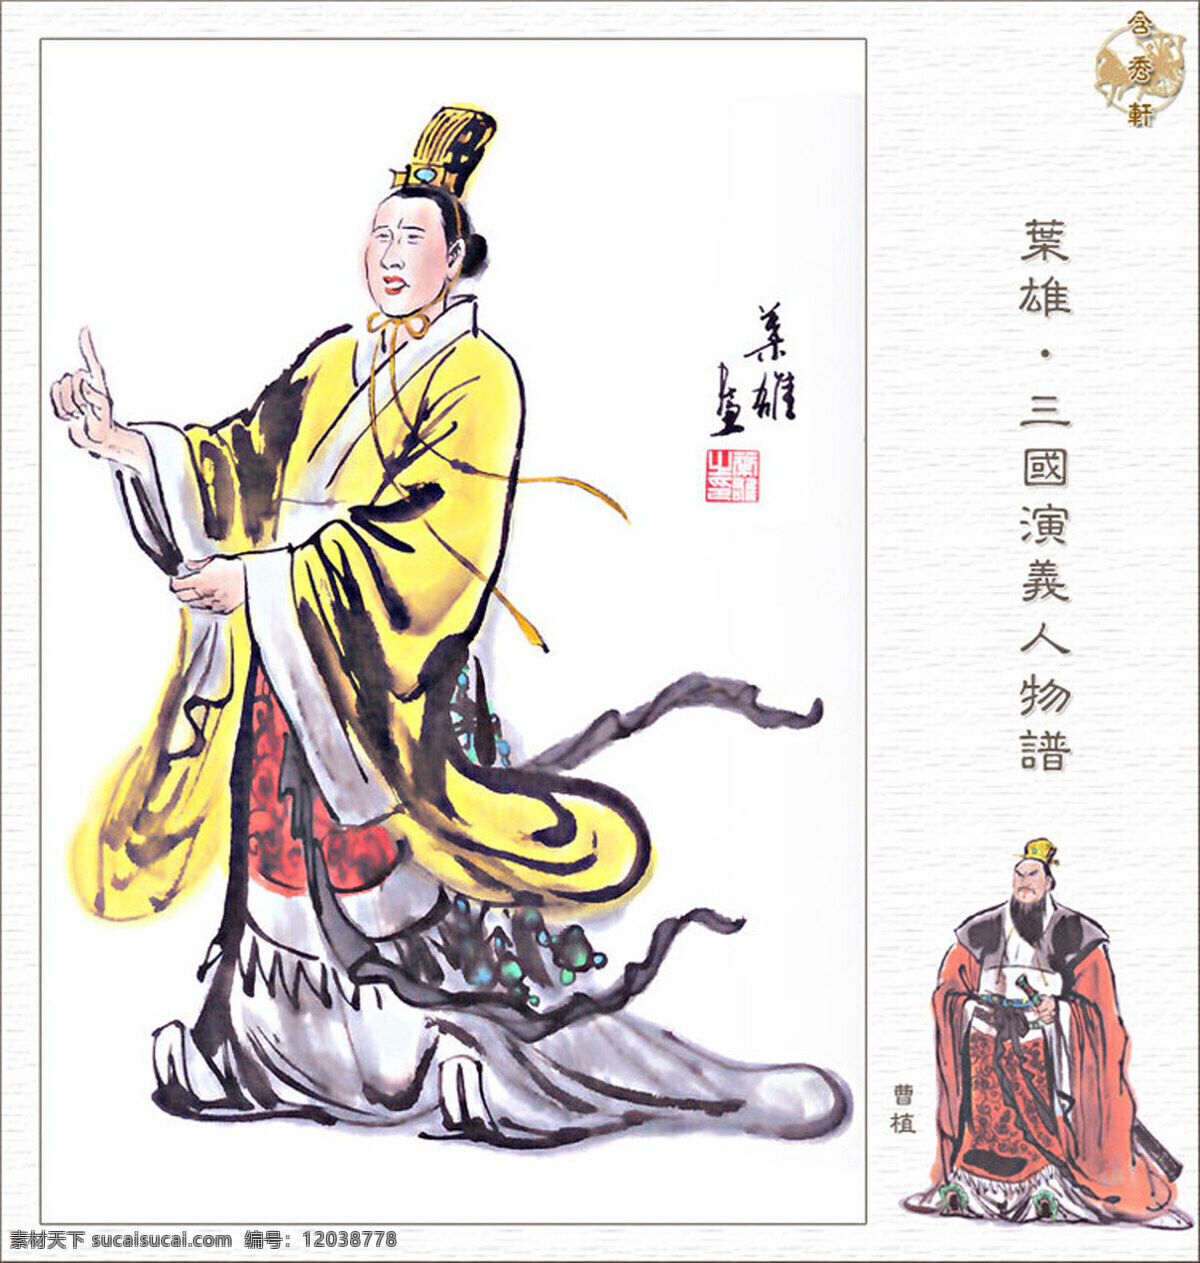 曹植 三国 国画 人物 工笔 写意 写实 传统文化 三国演义 绘画书法 文化艺术